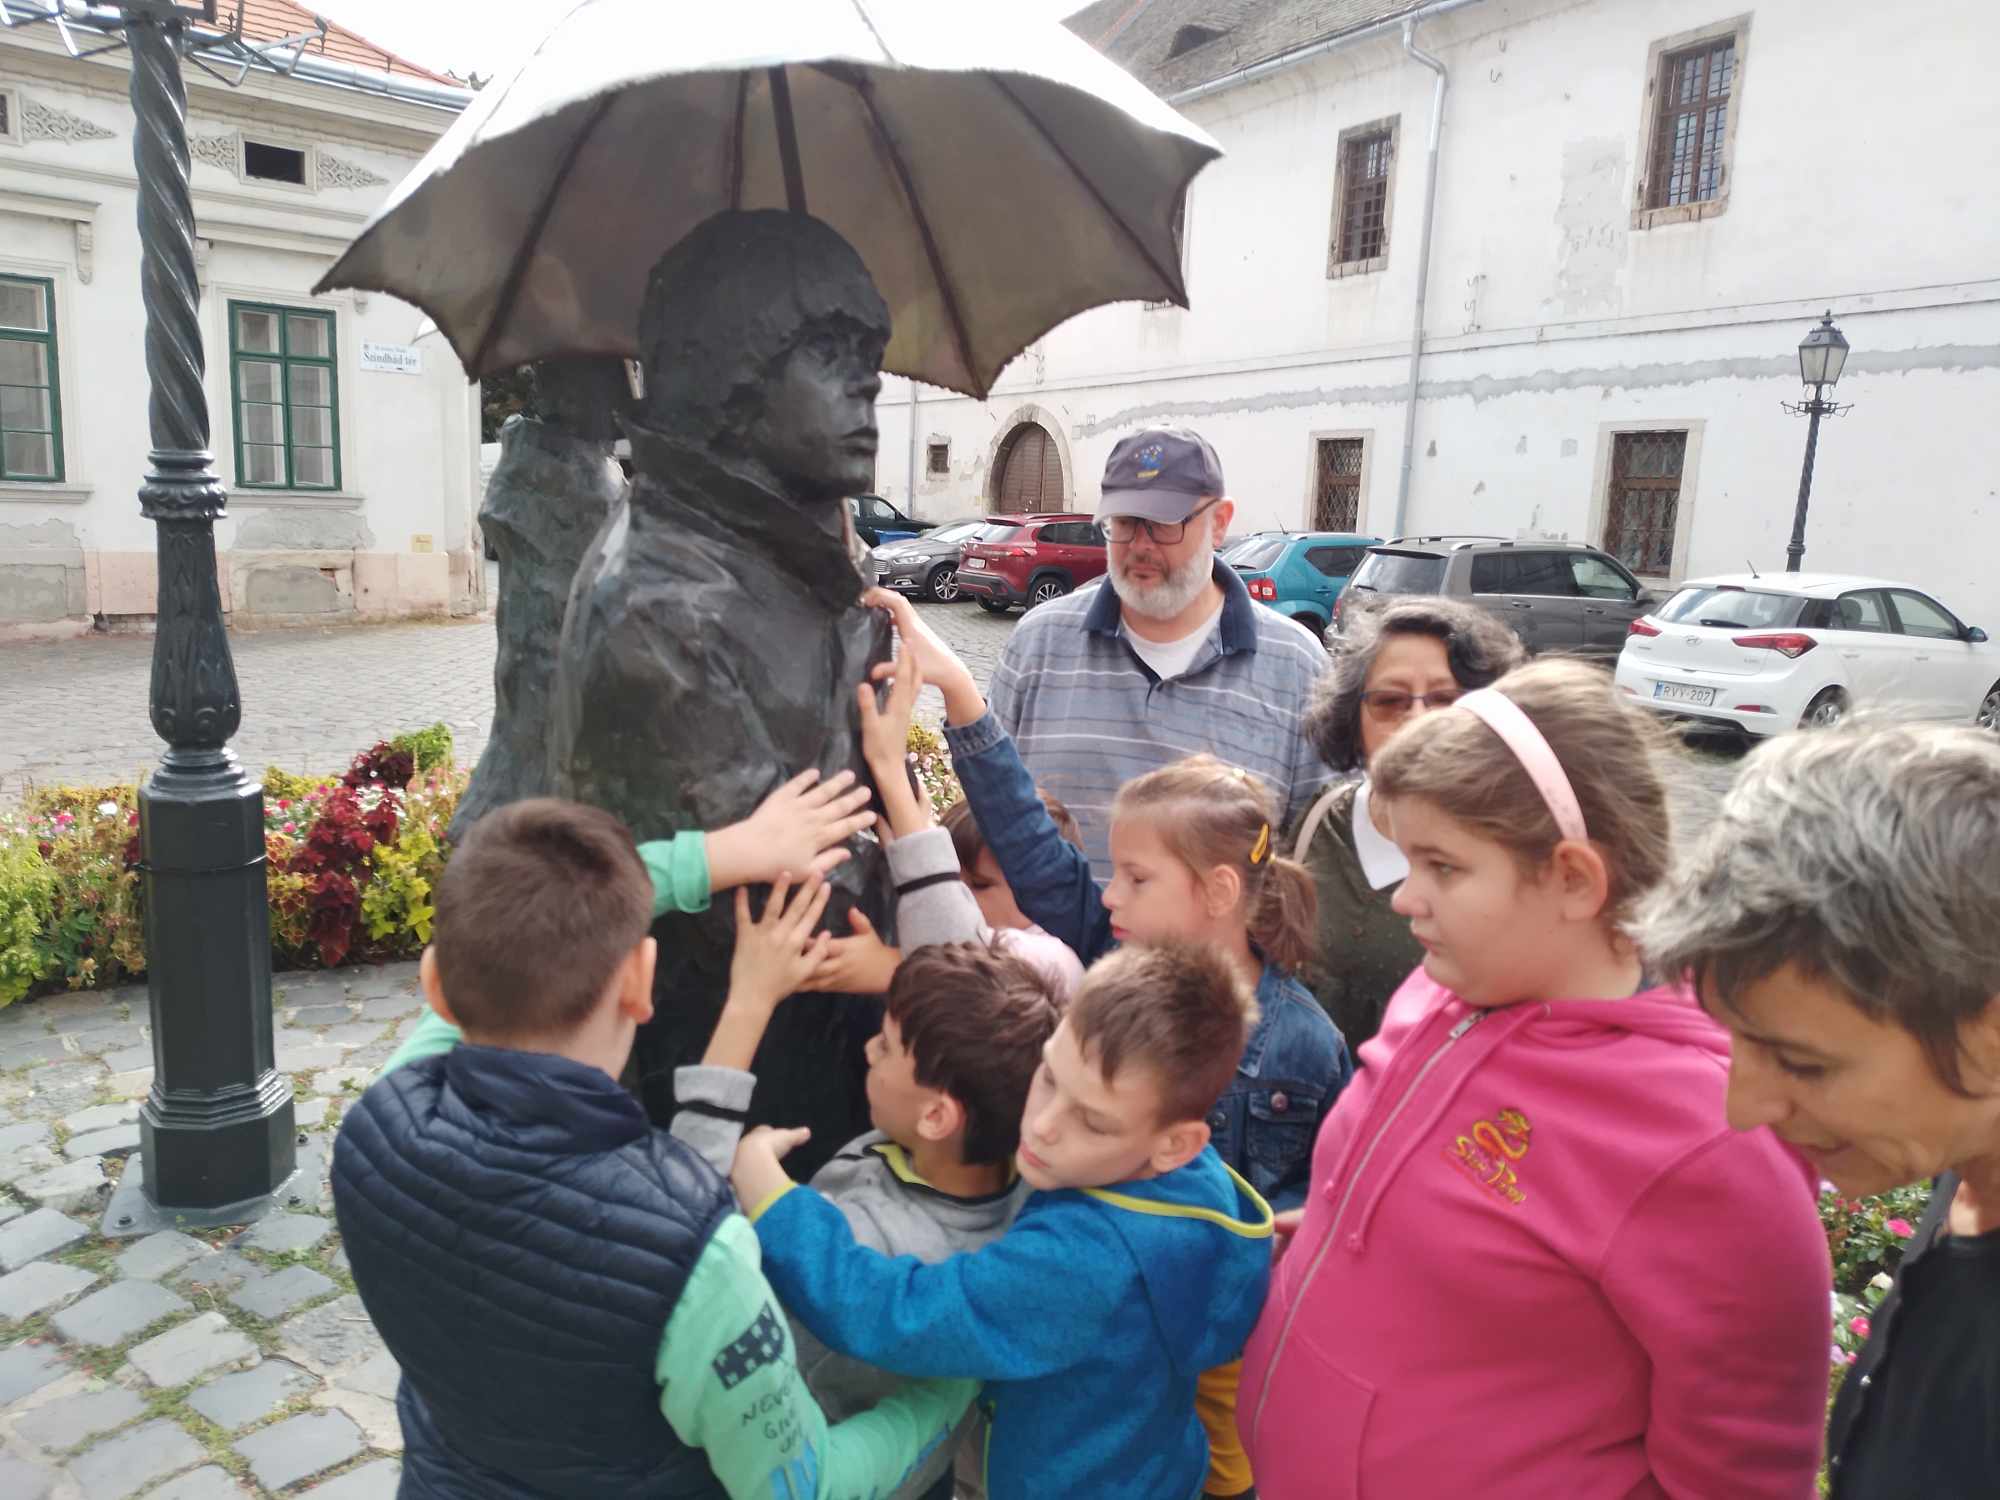 Szeptember 27-én meglátogattuk a Varga Imre Gyűjteményt az Általános Iskola tanulóival